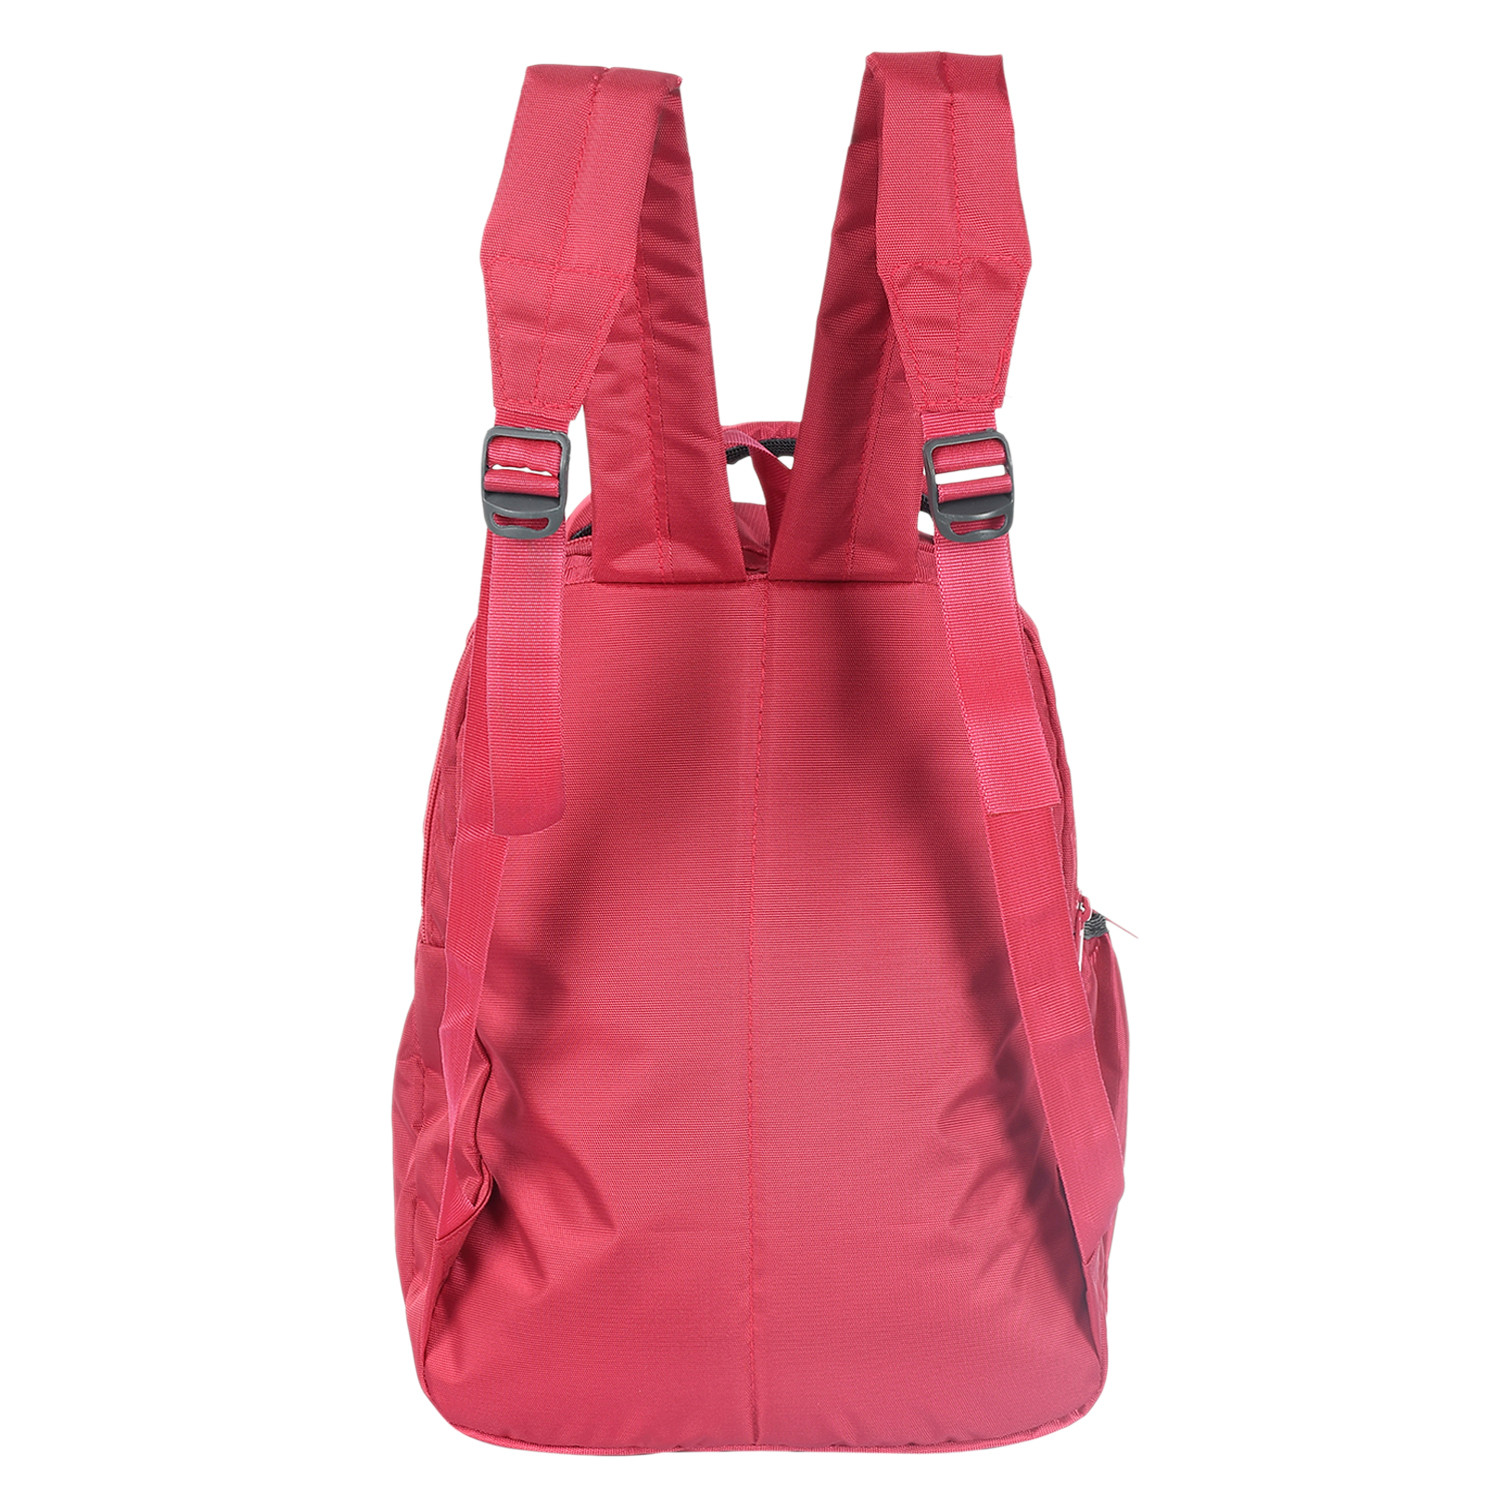 Kuber Industries Disney Princess School Bag for Kids|Stylish Backpacks for Kids|Rexine Waterproof Shoulder Straps Bag (Pink)